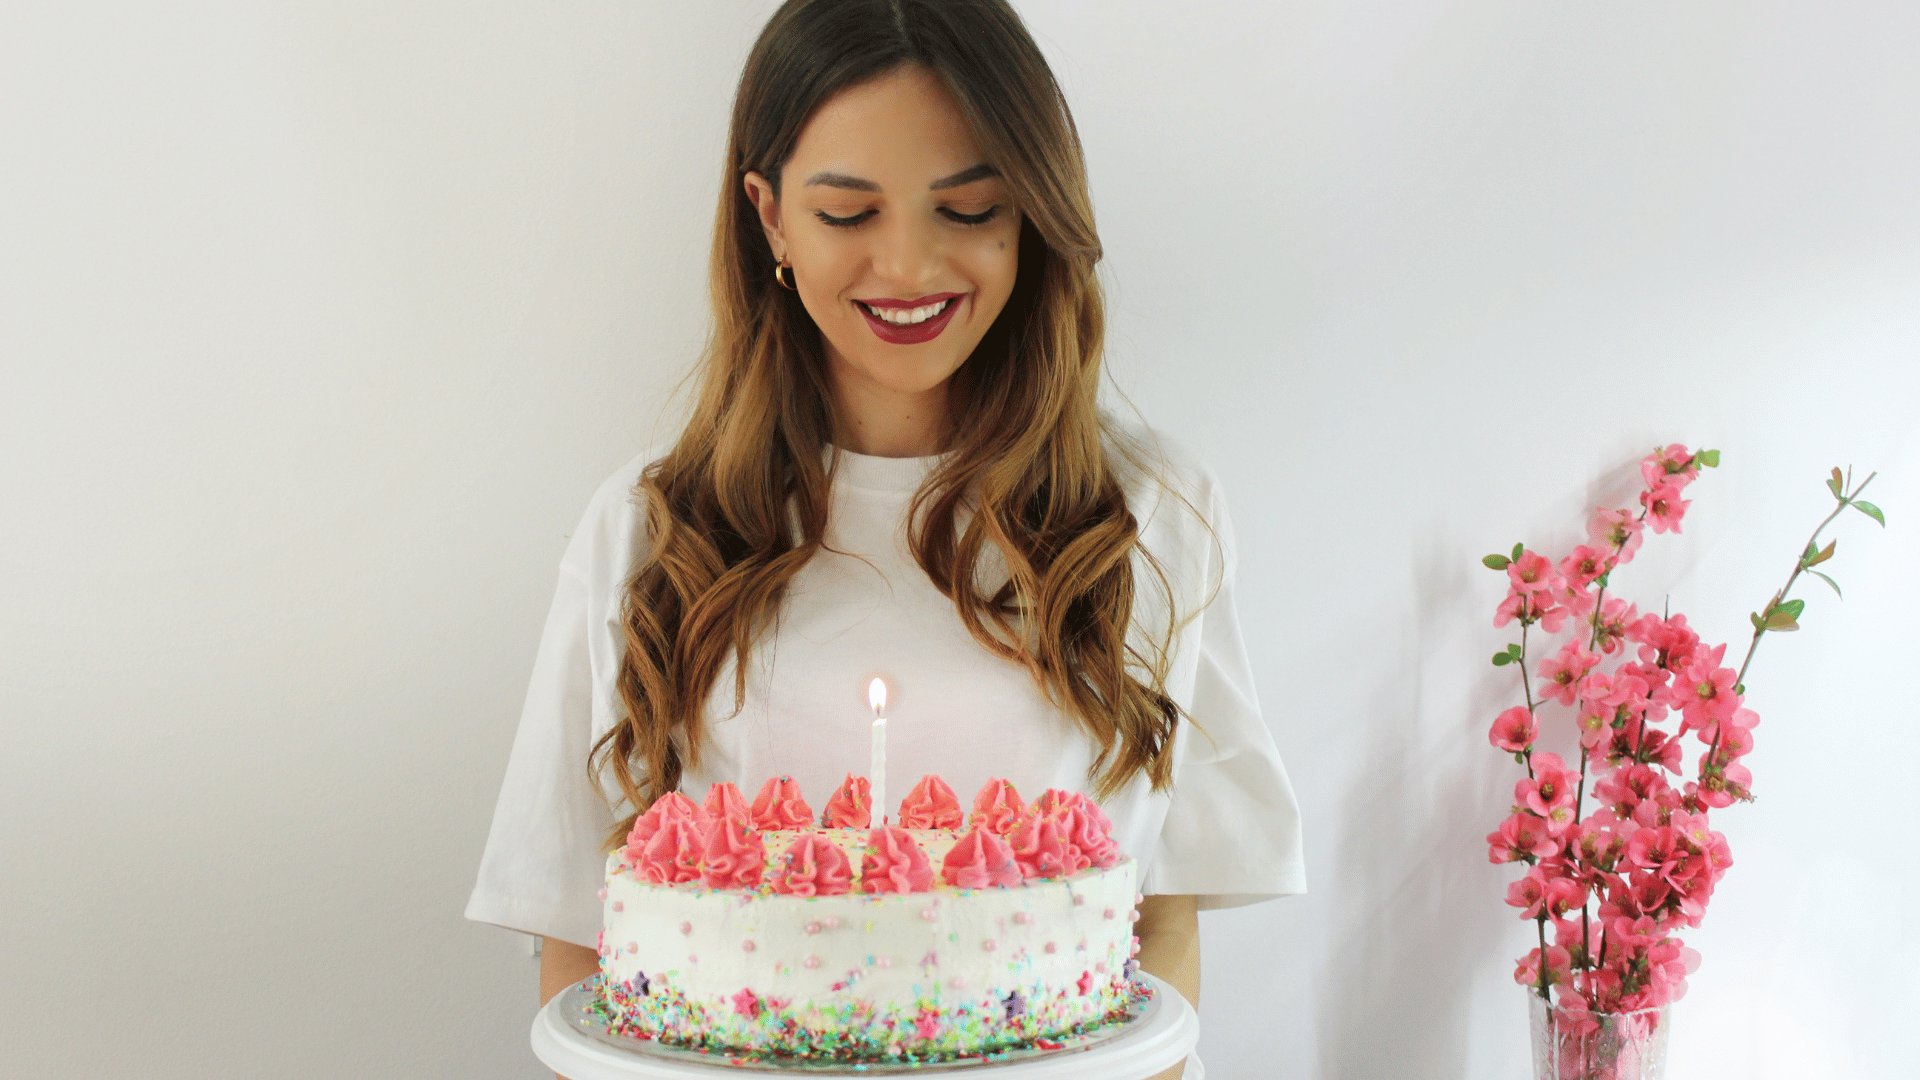 Garota loira comemorando seu aniversário com um bolo na mão.